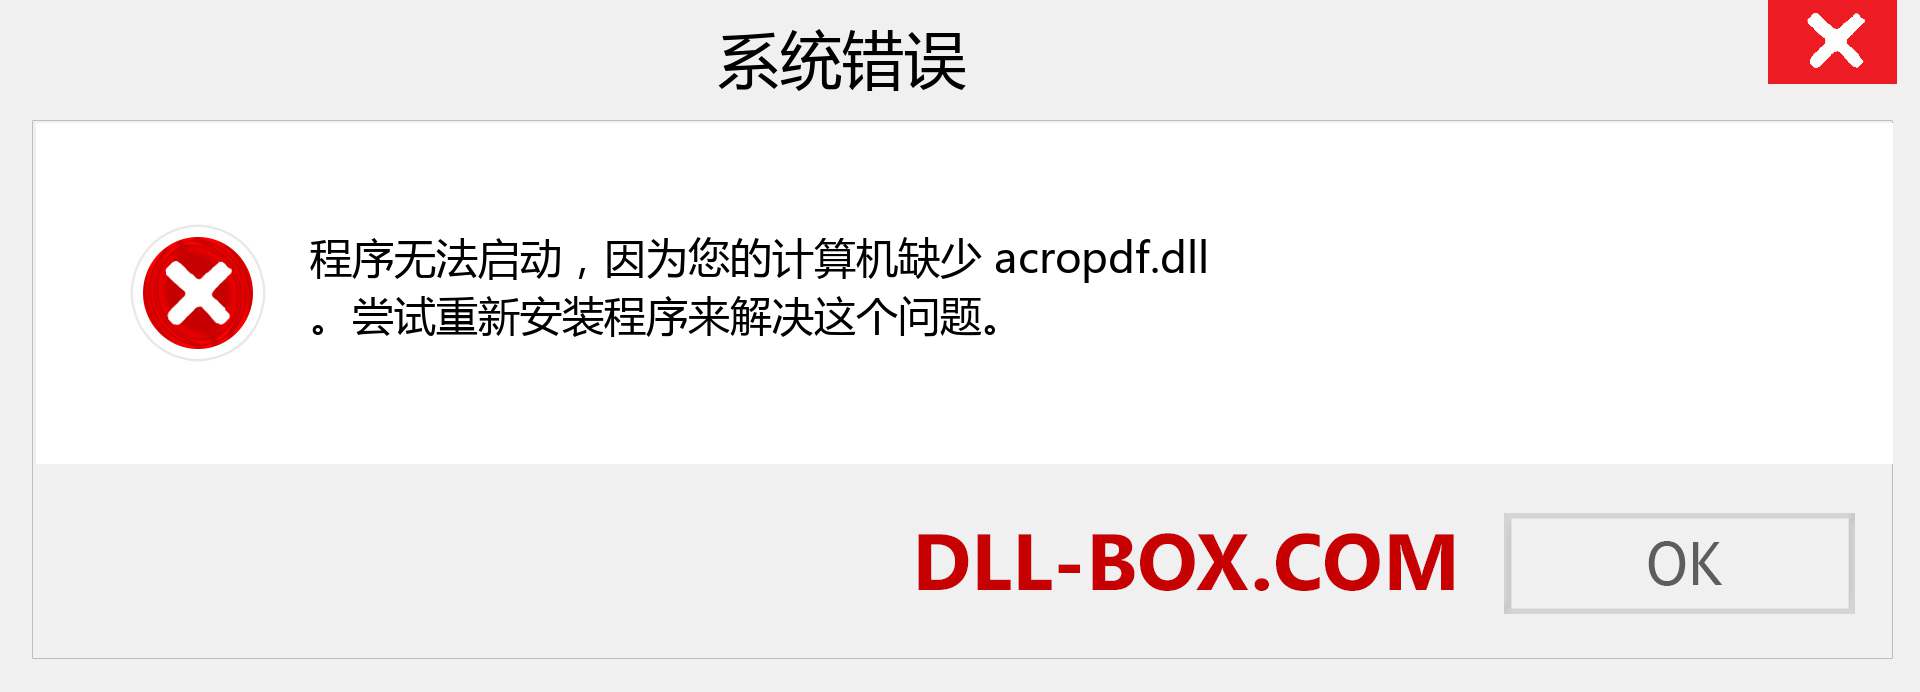 acropdf.dll 文件丢失？。 适用于 Windows 7、8、10 的下载 - 修复 Windows、照片、图像上的 acropdf dll 丢失错误